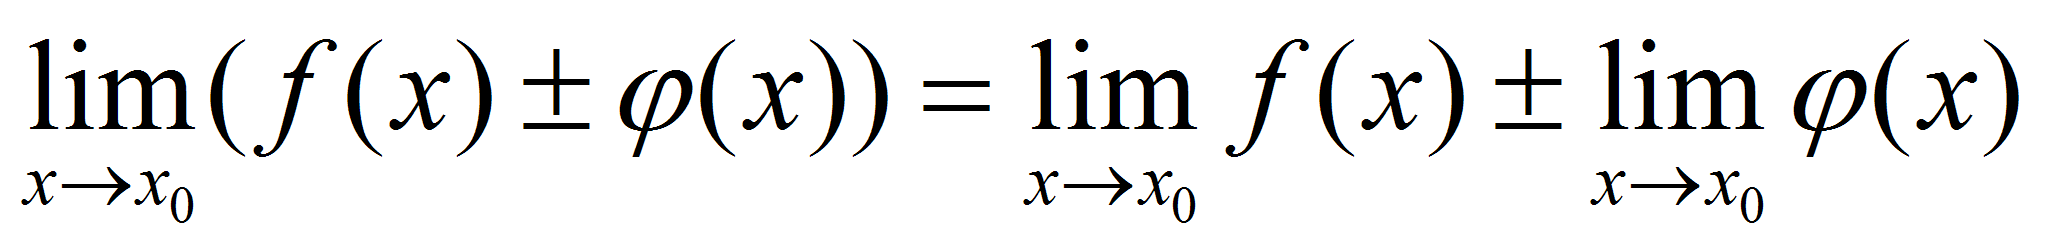 Lim f(x). Lim f x g x. Предел композиции функций. Предел произведения равен произведению пределов.